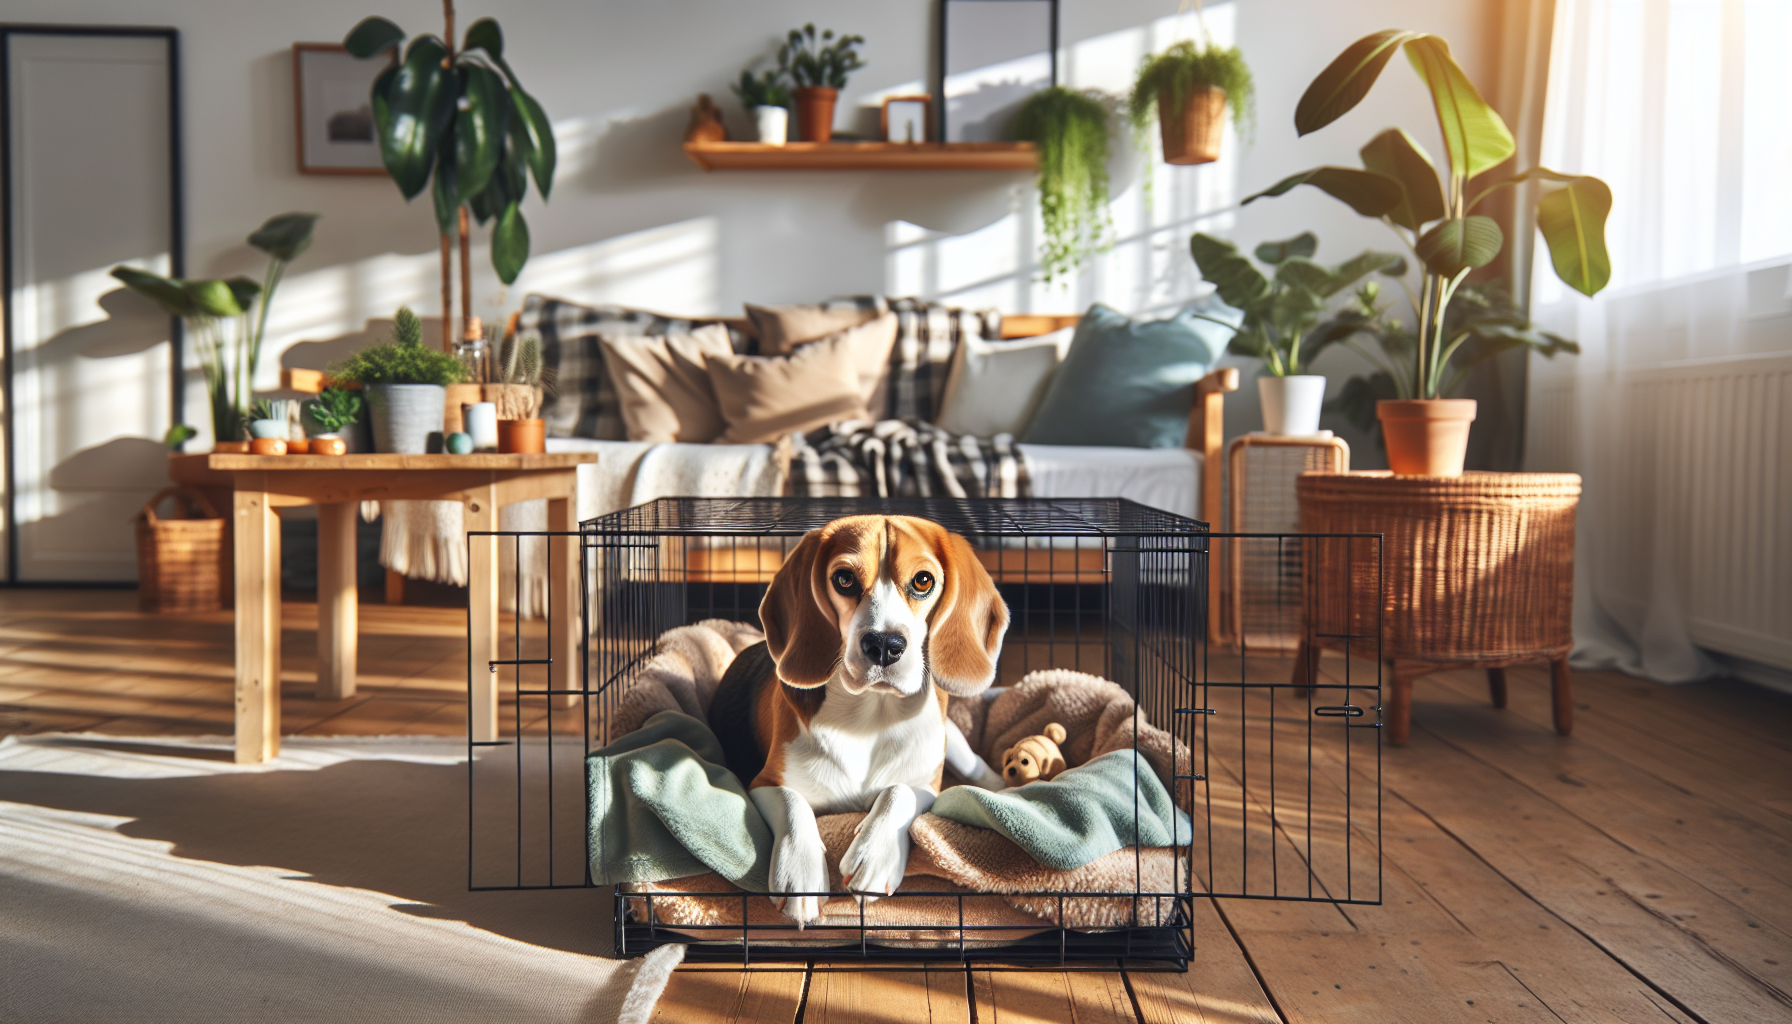 Beagle in a crate